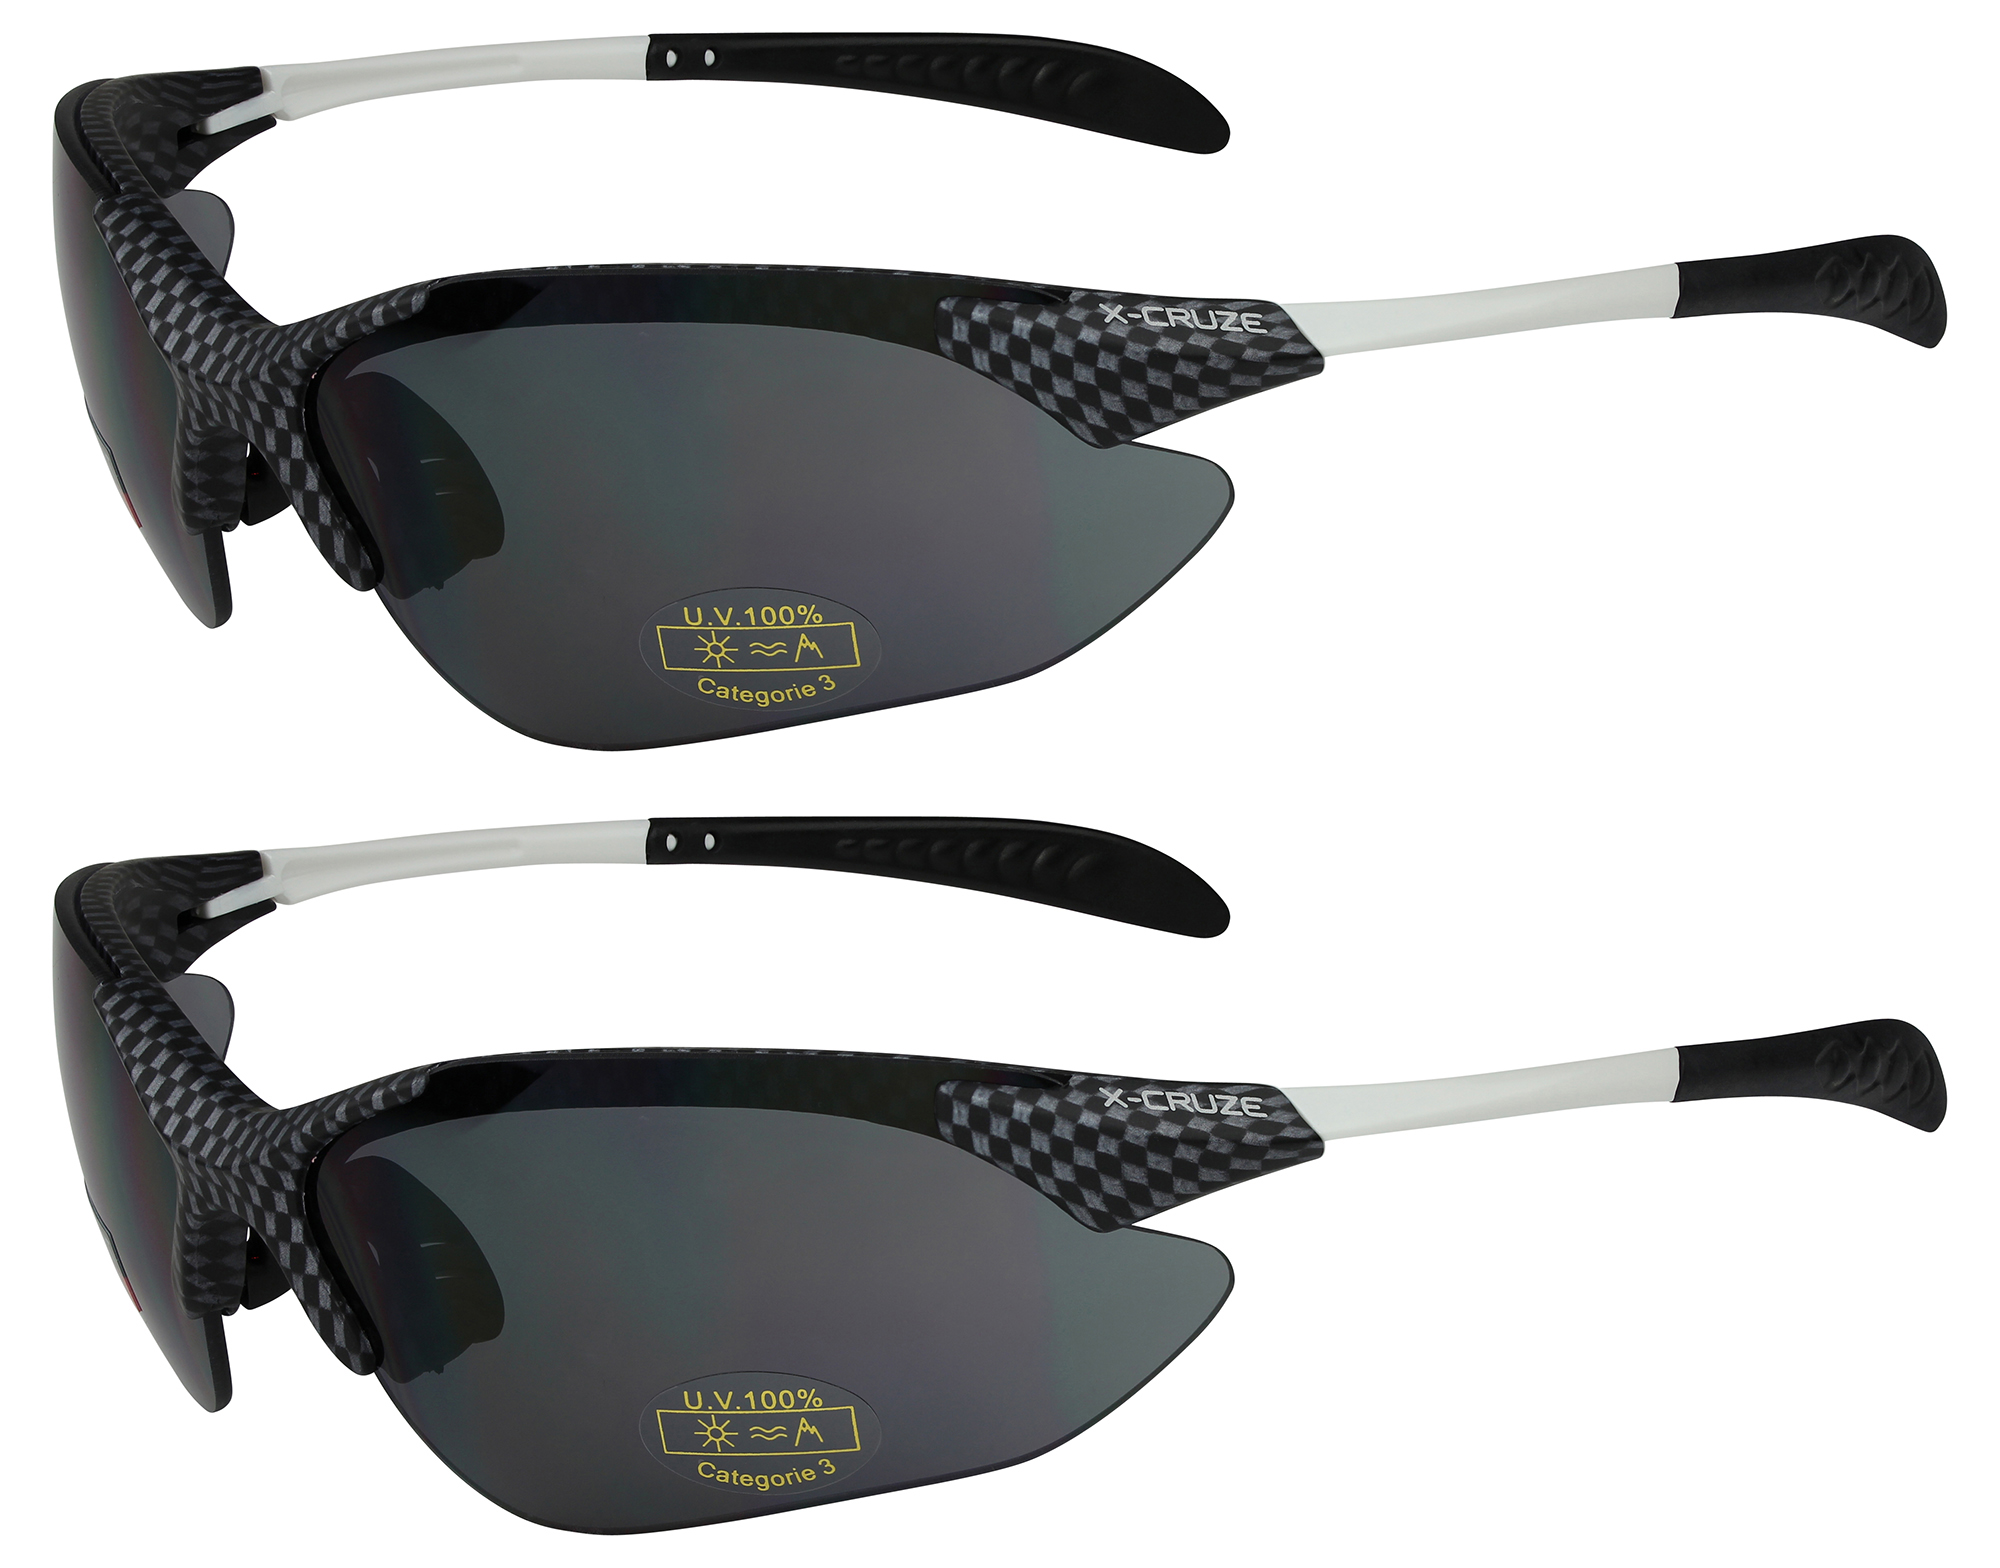 Pacco 2er X-CRUZE ® Occhiali bici Occhiali sportivi Occhiali da sole occhiali uomini nero 